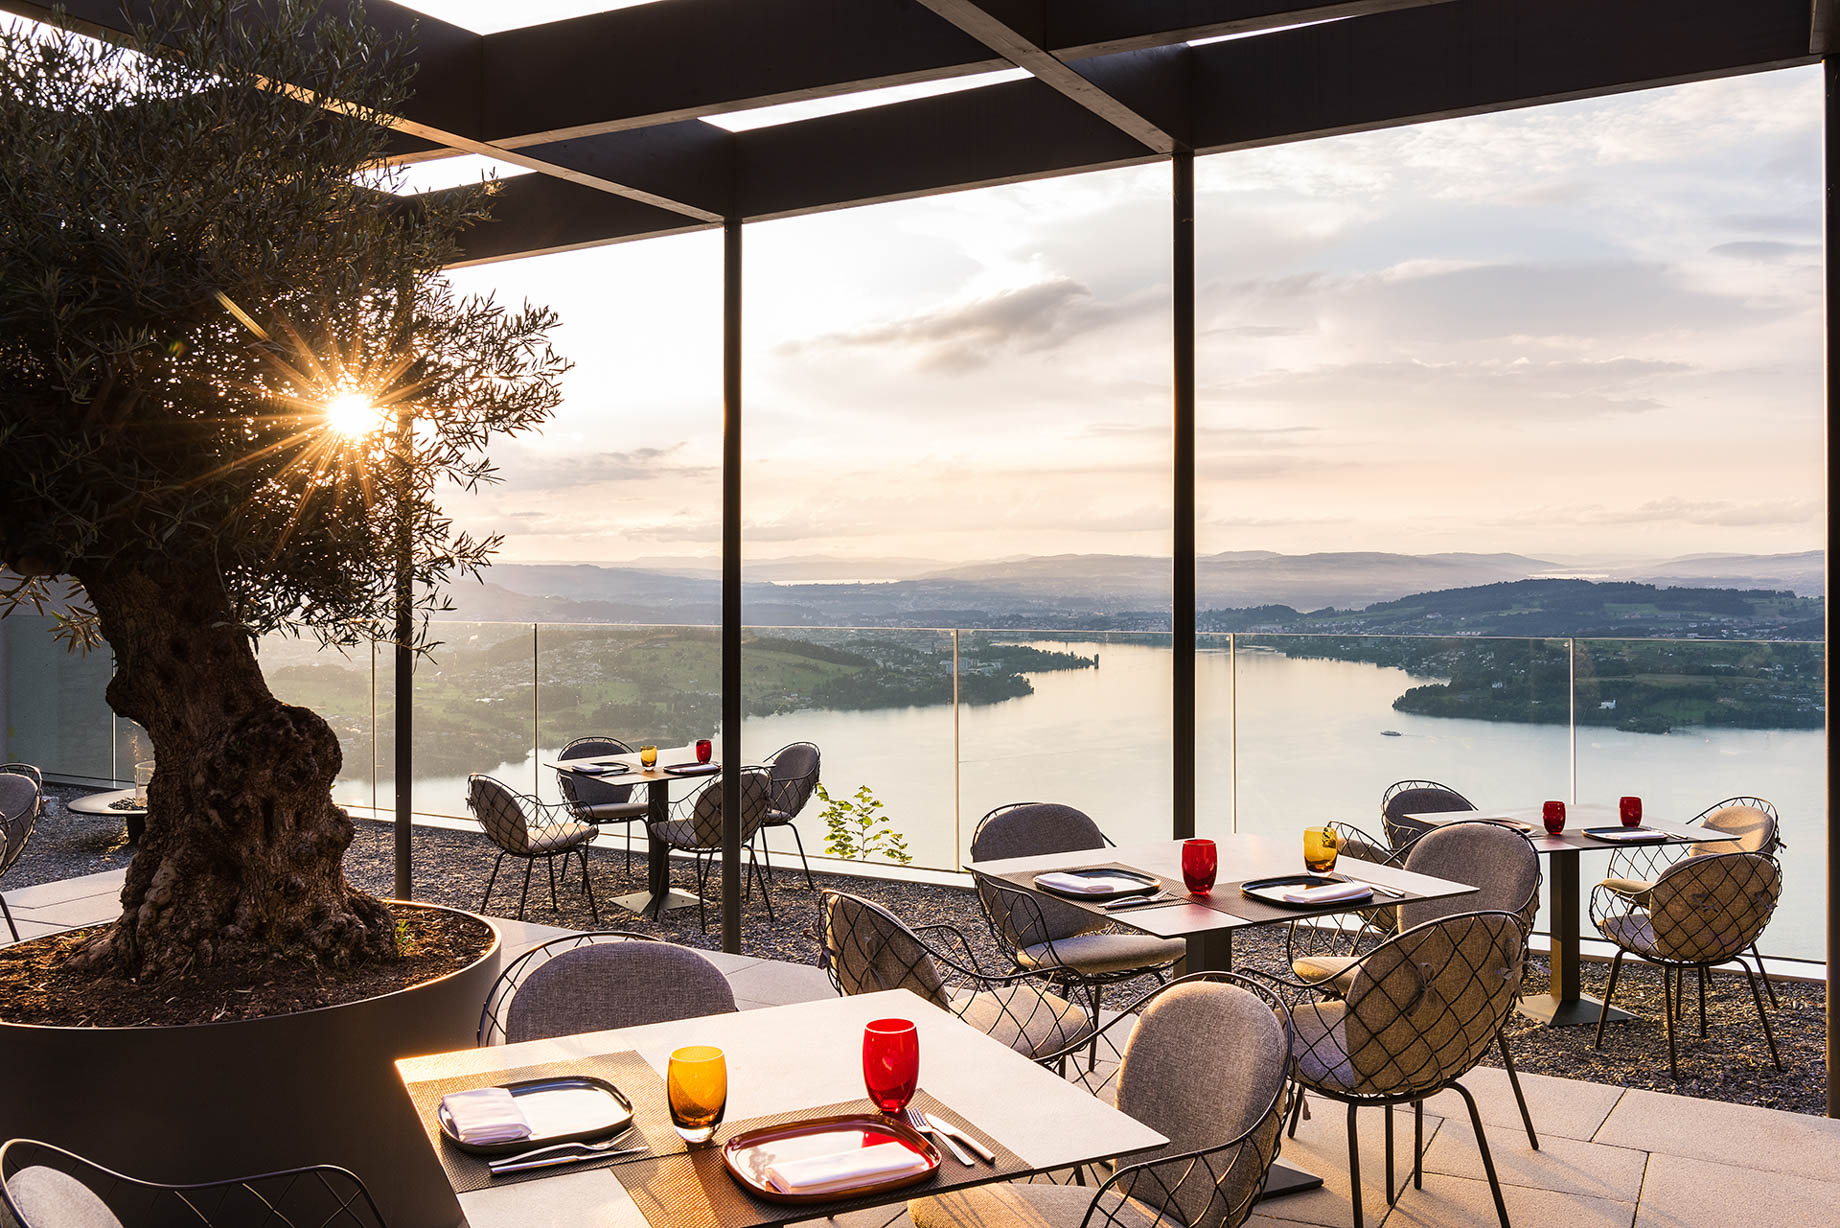 Burgenstock Hotel & Alpine Spa – Obburgen, Switzerland – Sharq Oriental Restaurant Outdoor Terrace Sunset View